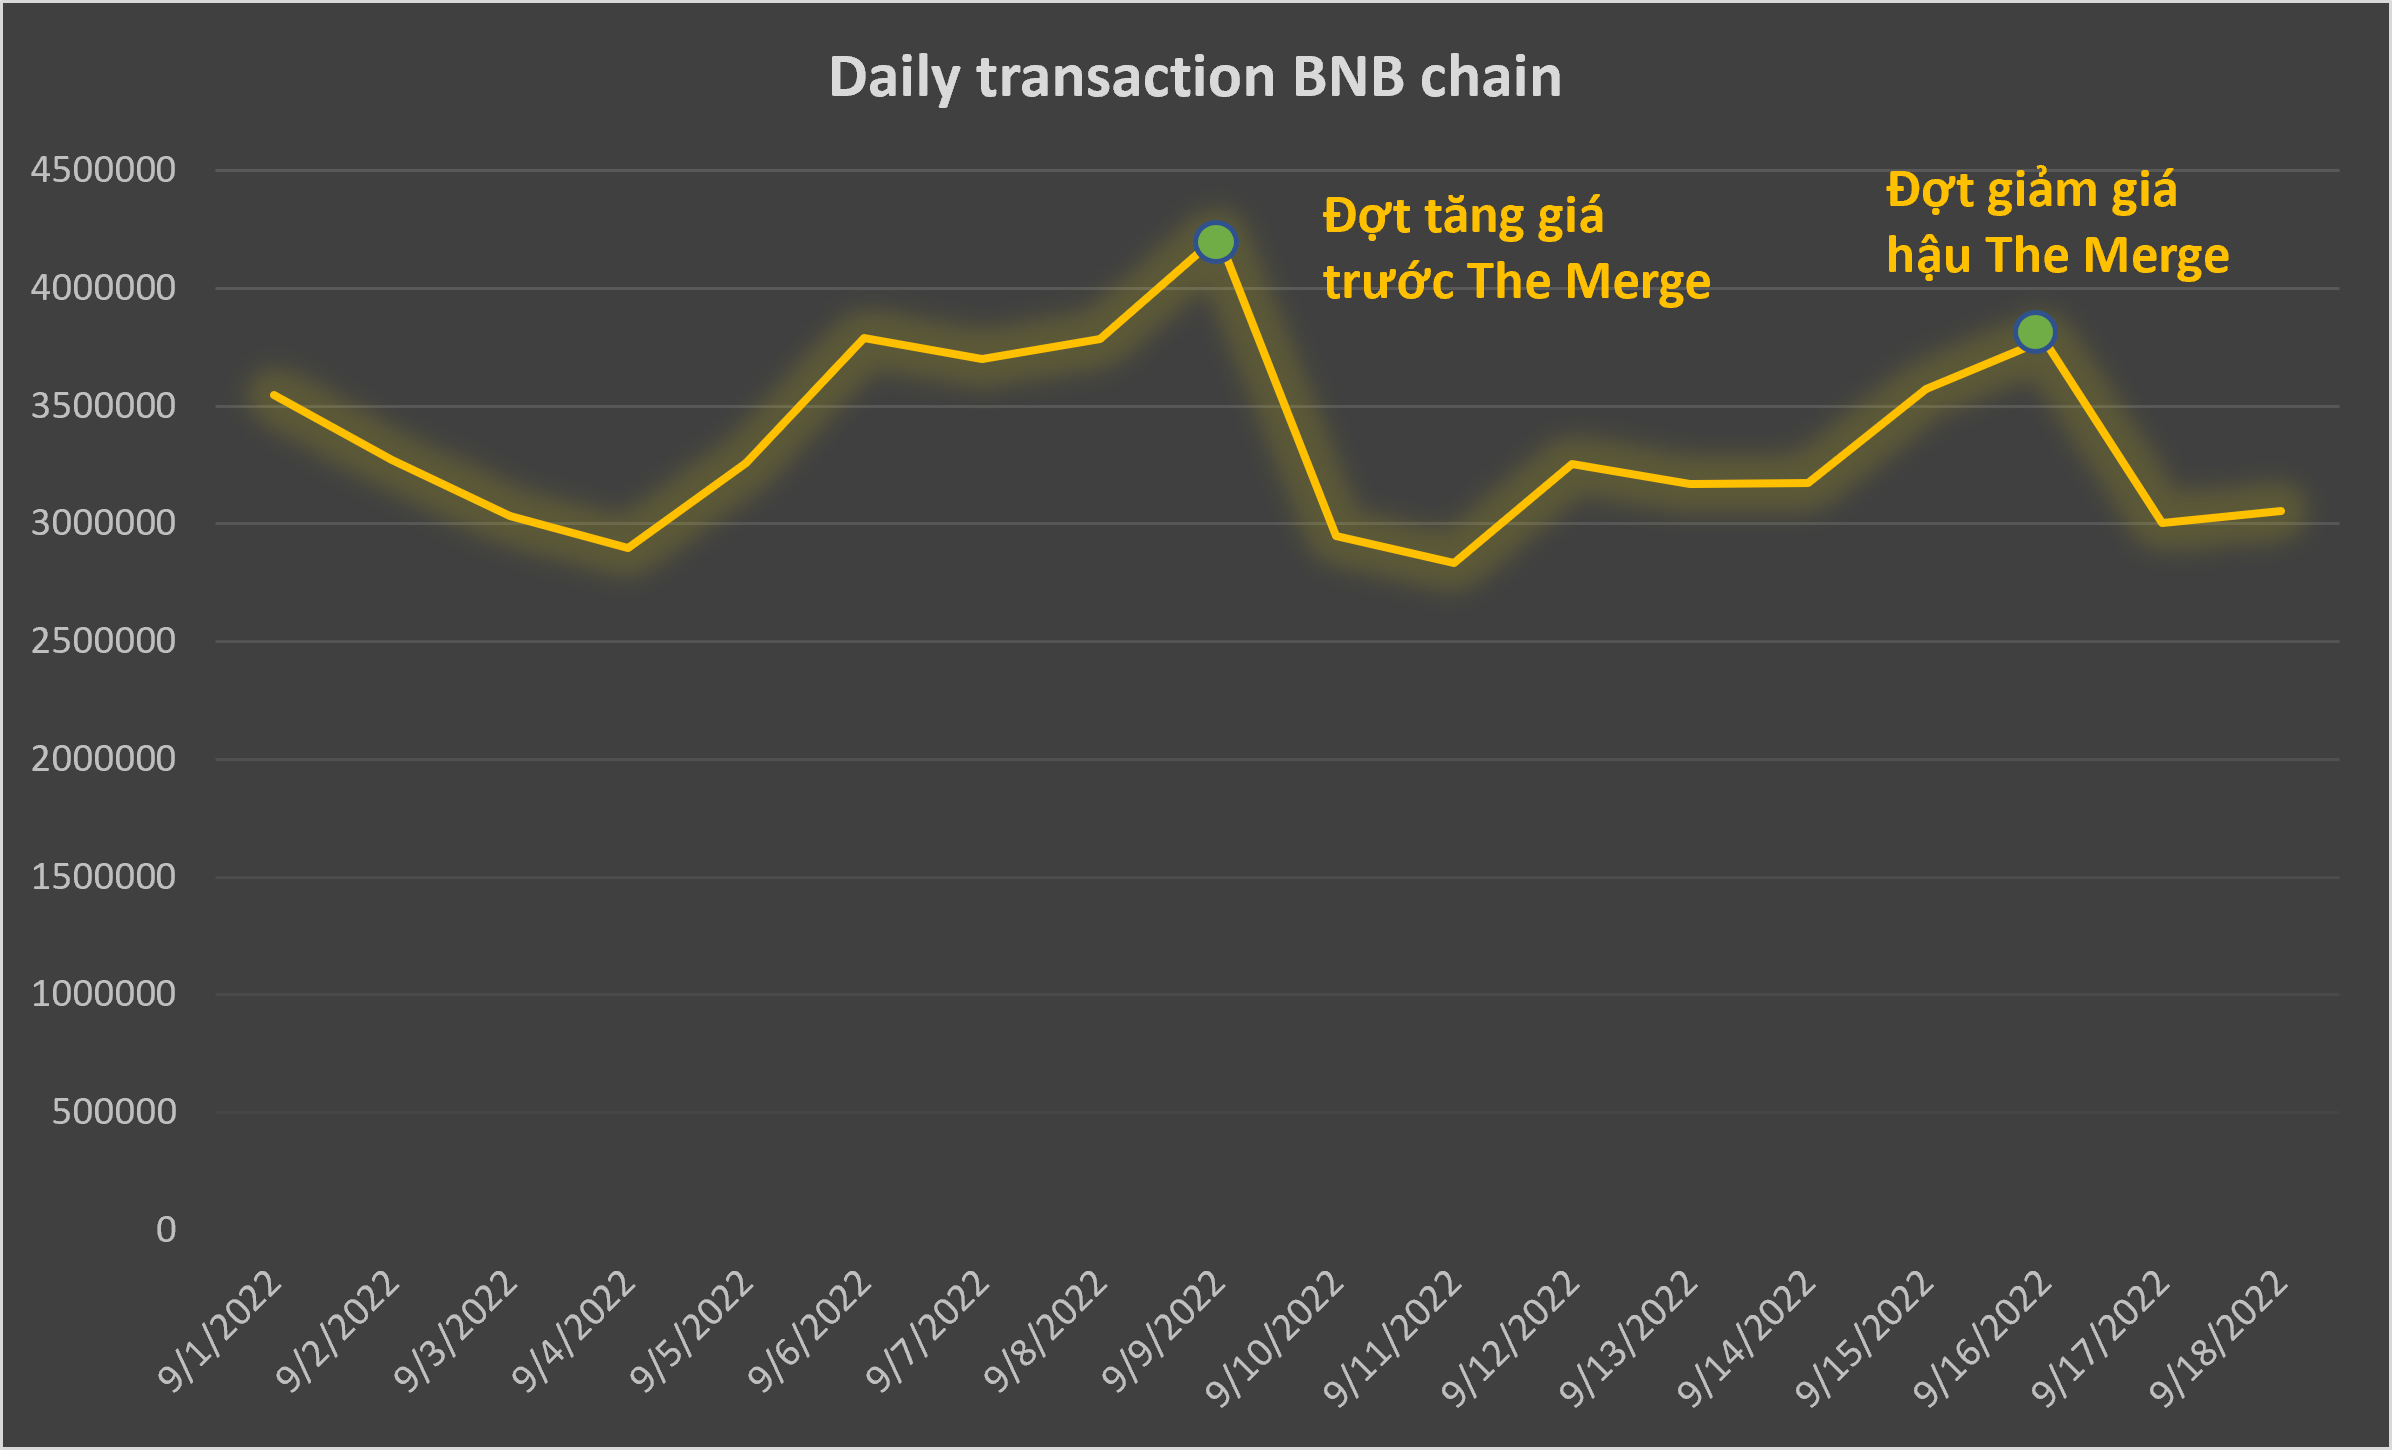 Số lượng giao dịch hằng ngày trên BNB chain